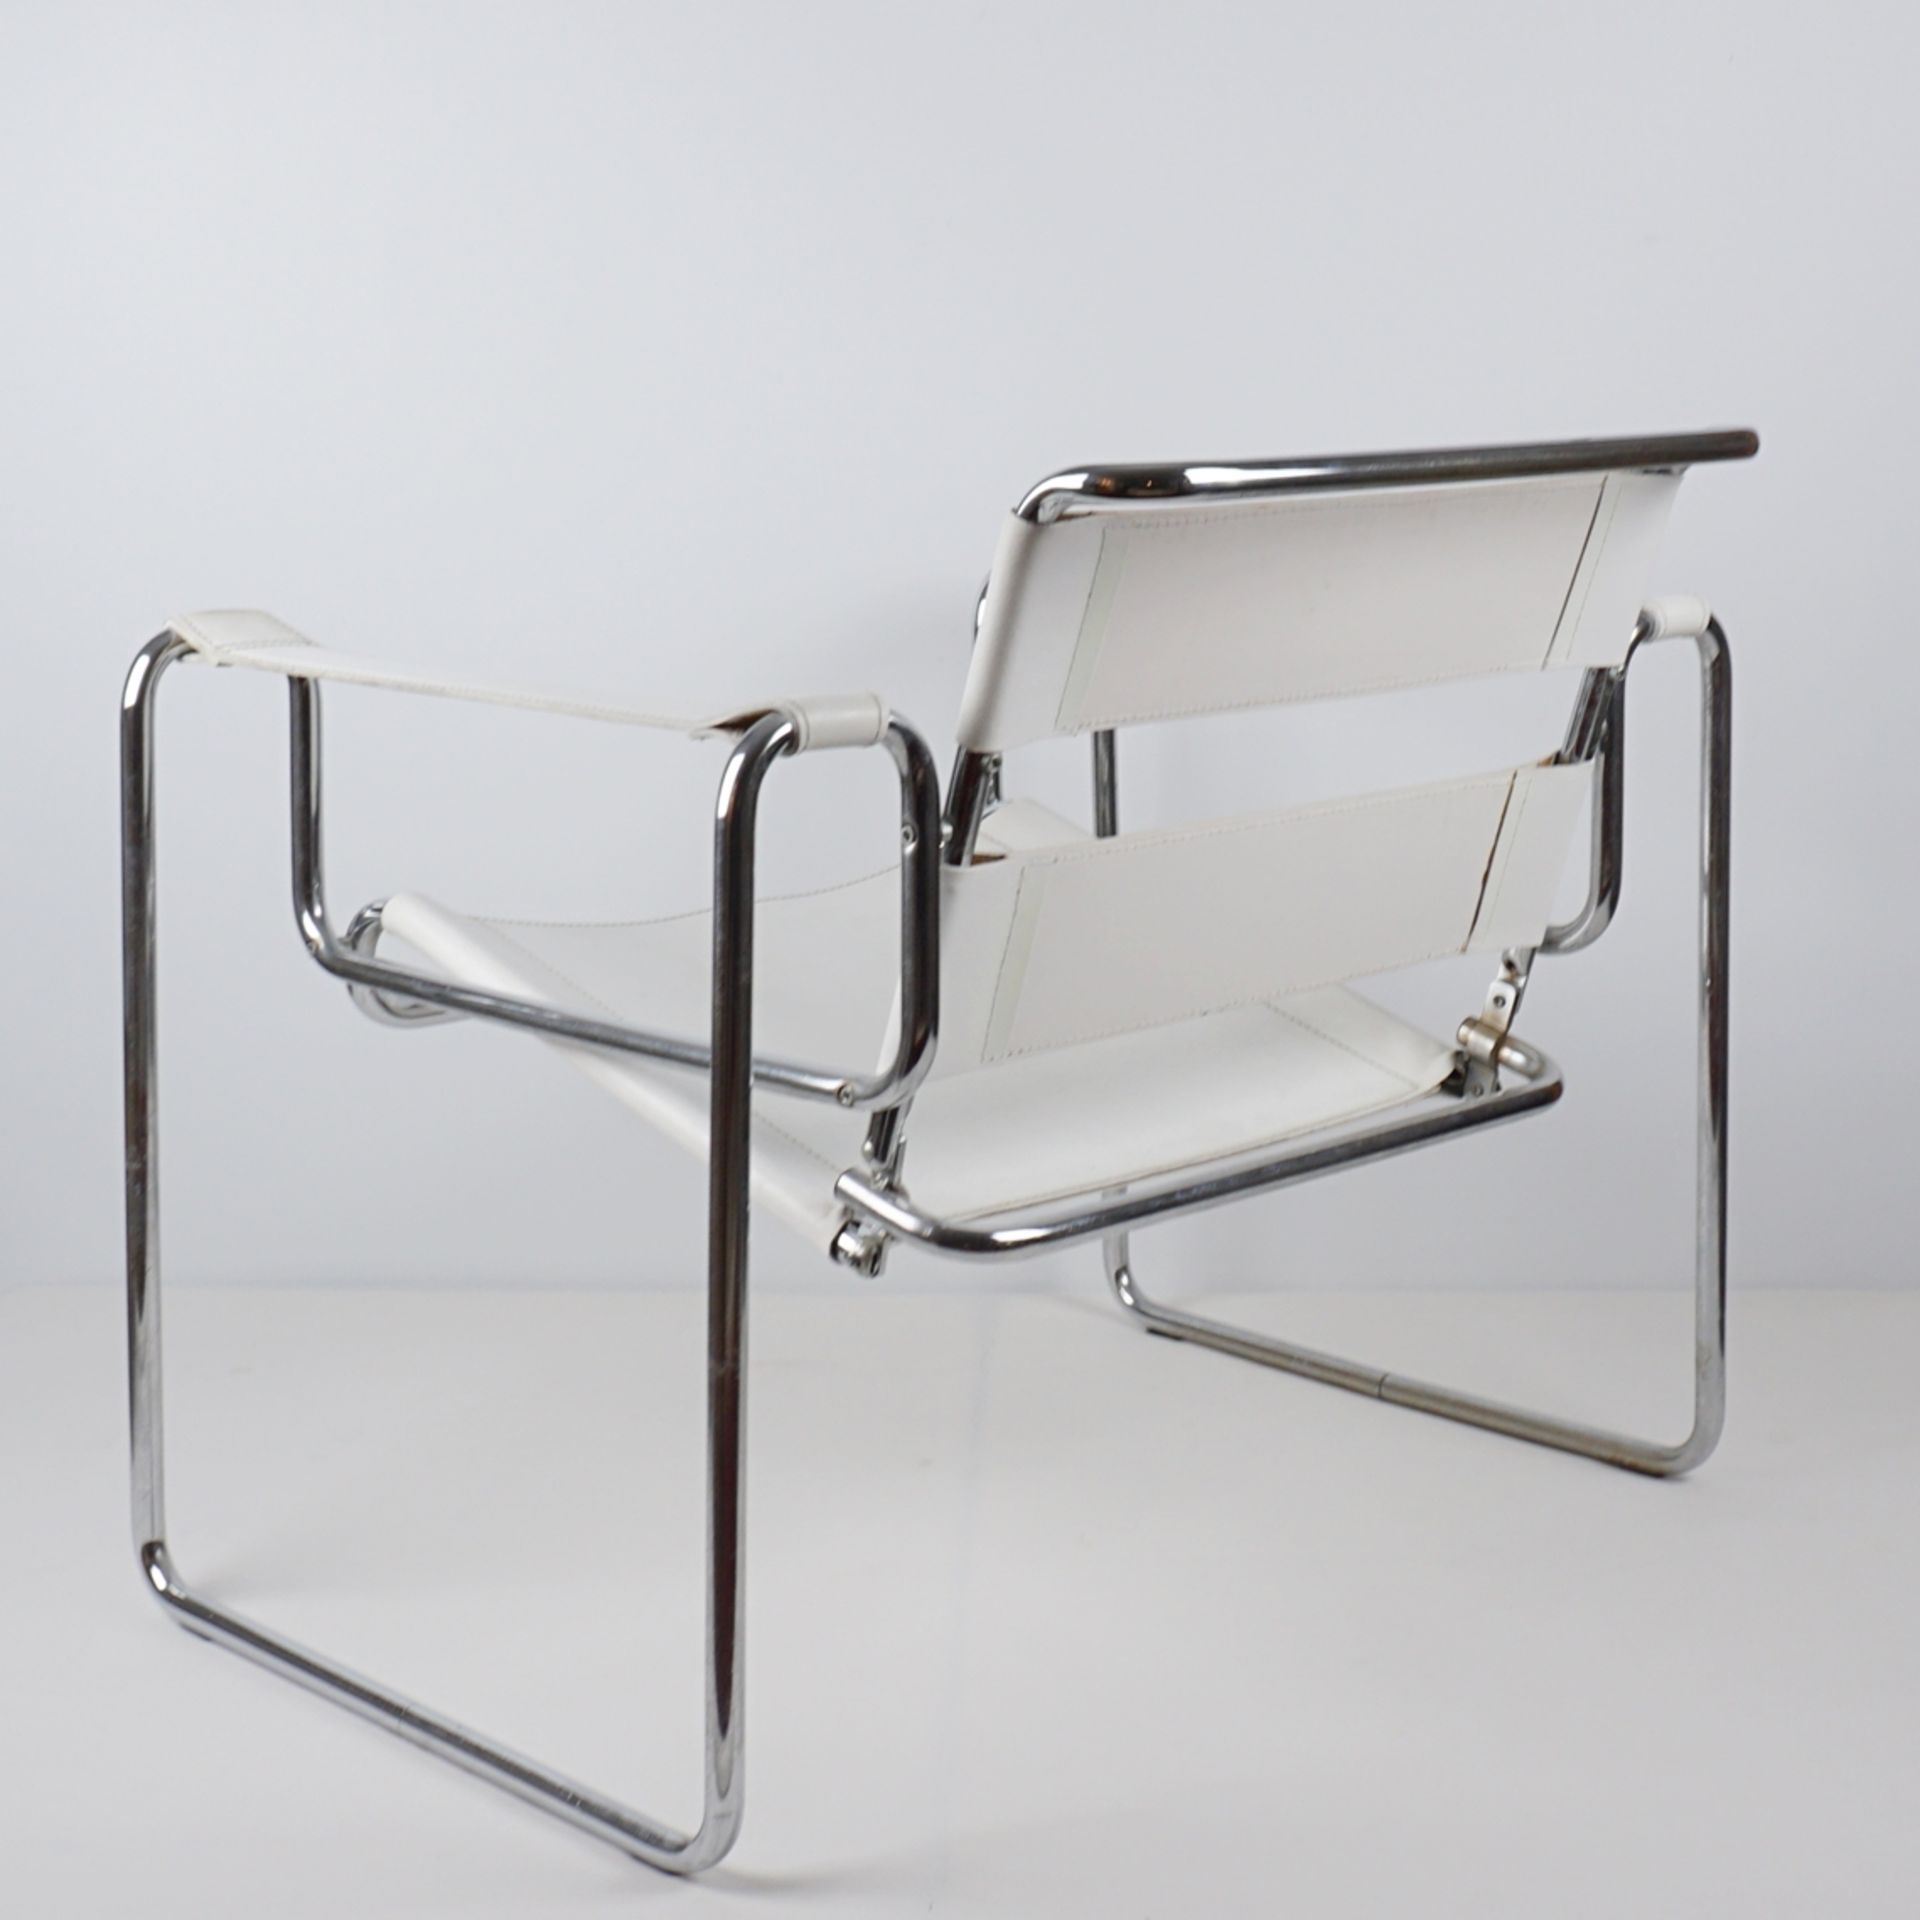 Paar Armlehnstühle im Stil der Wassily chairs von Marcel Breuer, 1960/1970er Jahre - Image 3 of 5